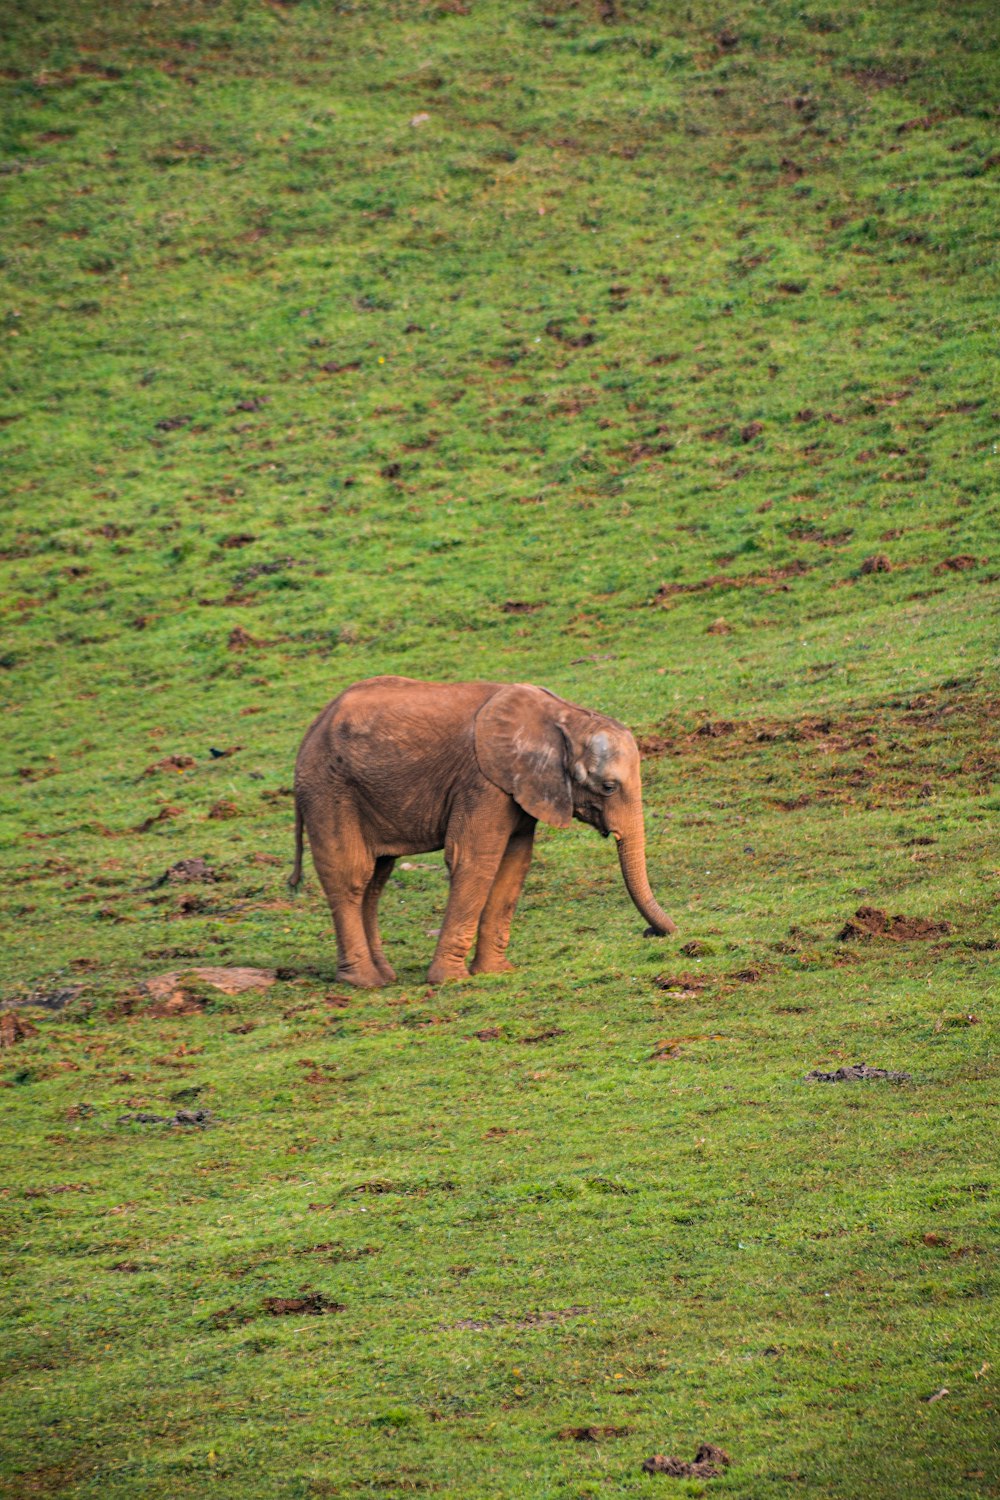 a baby elephant walking across a lush green field